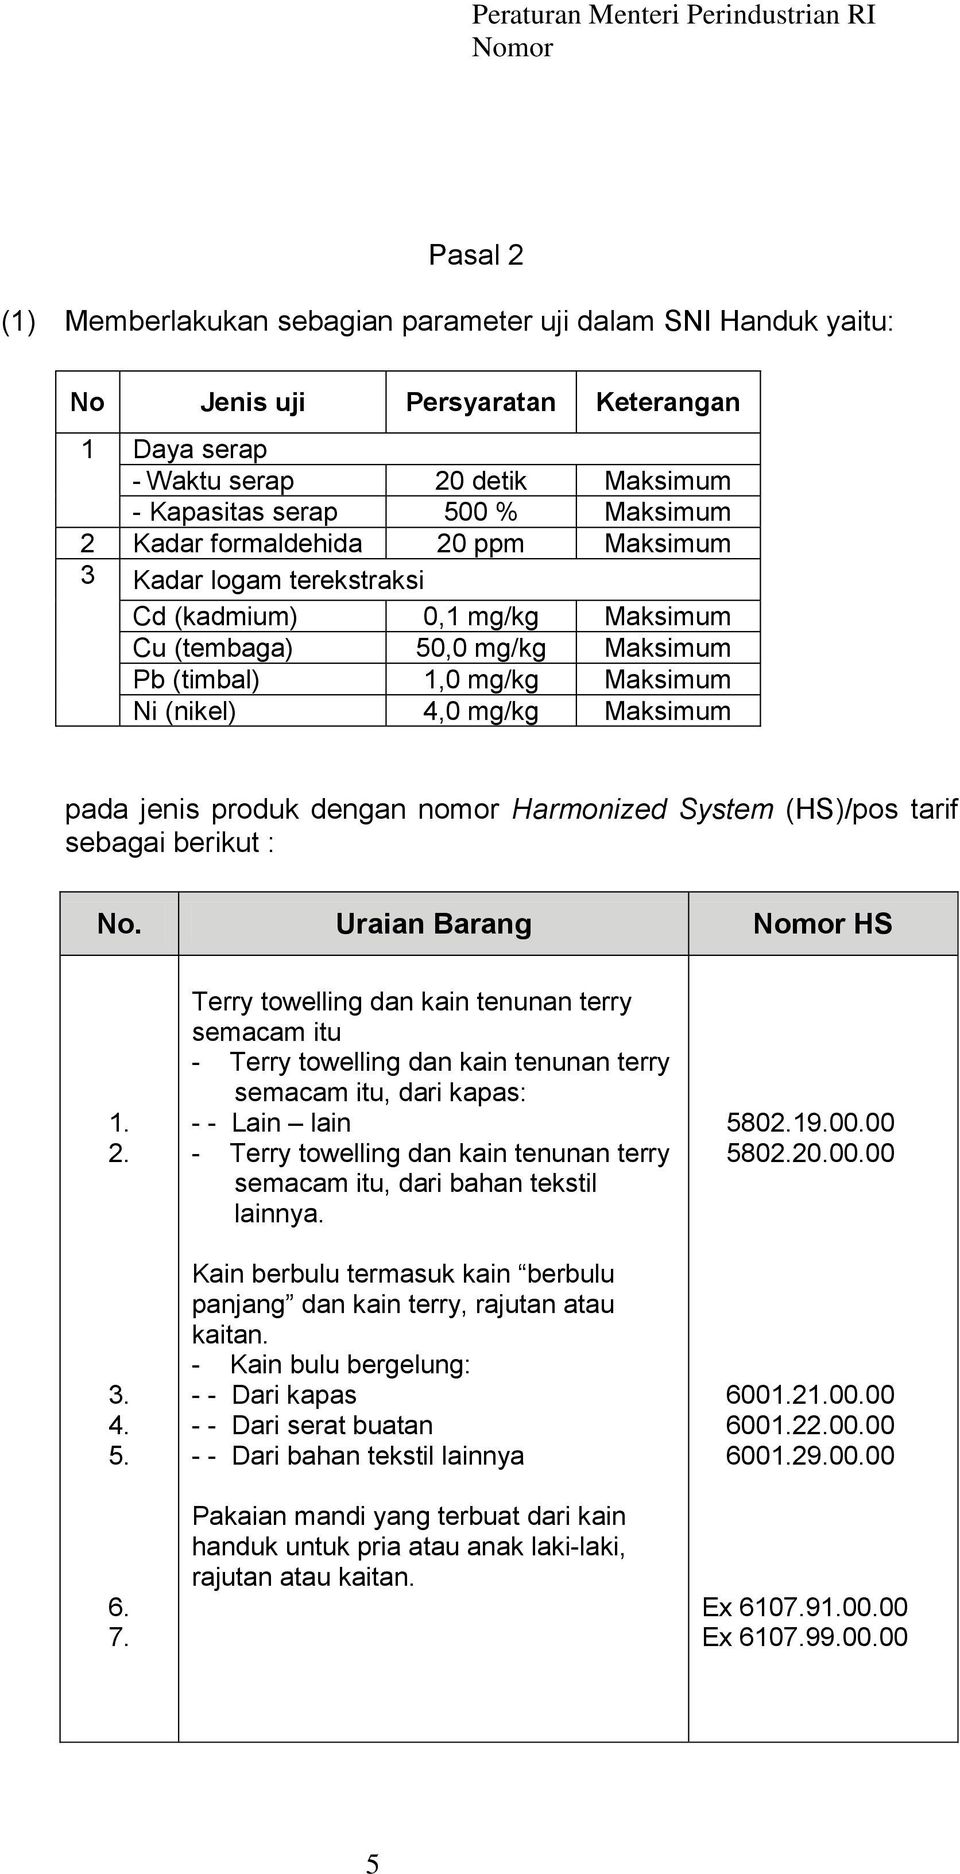 dengan nomor Harmonized System (HS)/pos tarif sebagai berikut : No. Uraian Barang HS 1. 2. 3. 4. 5. 6. 7.